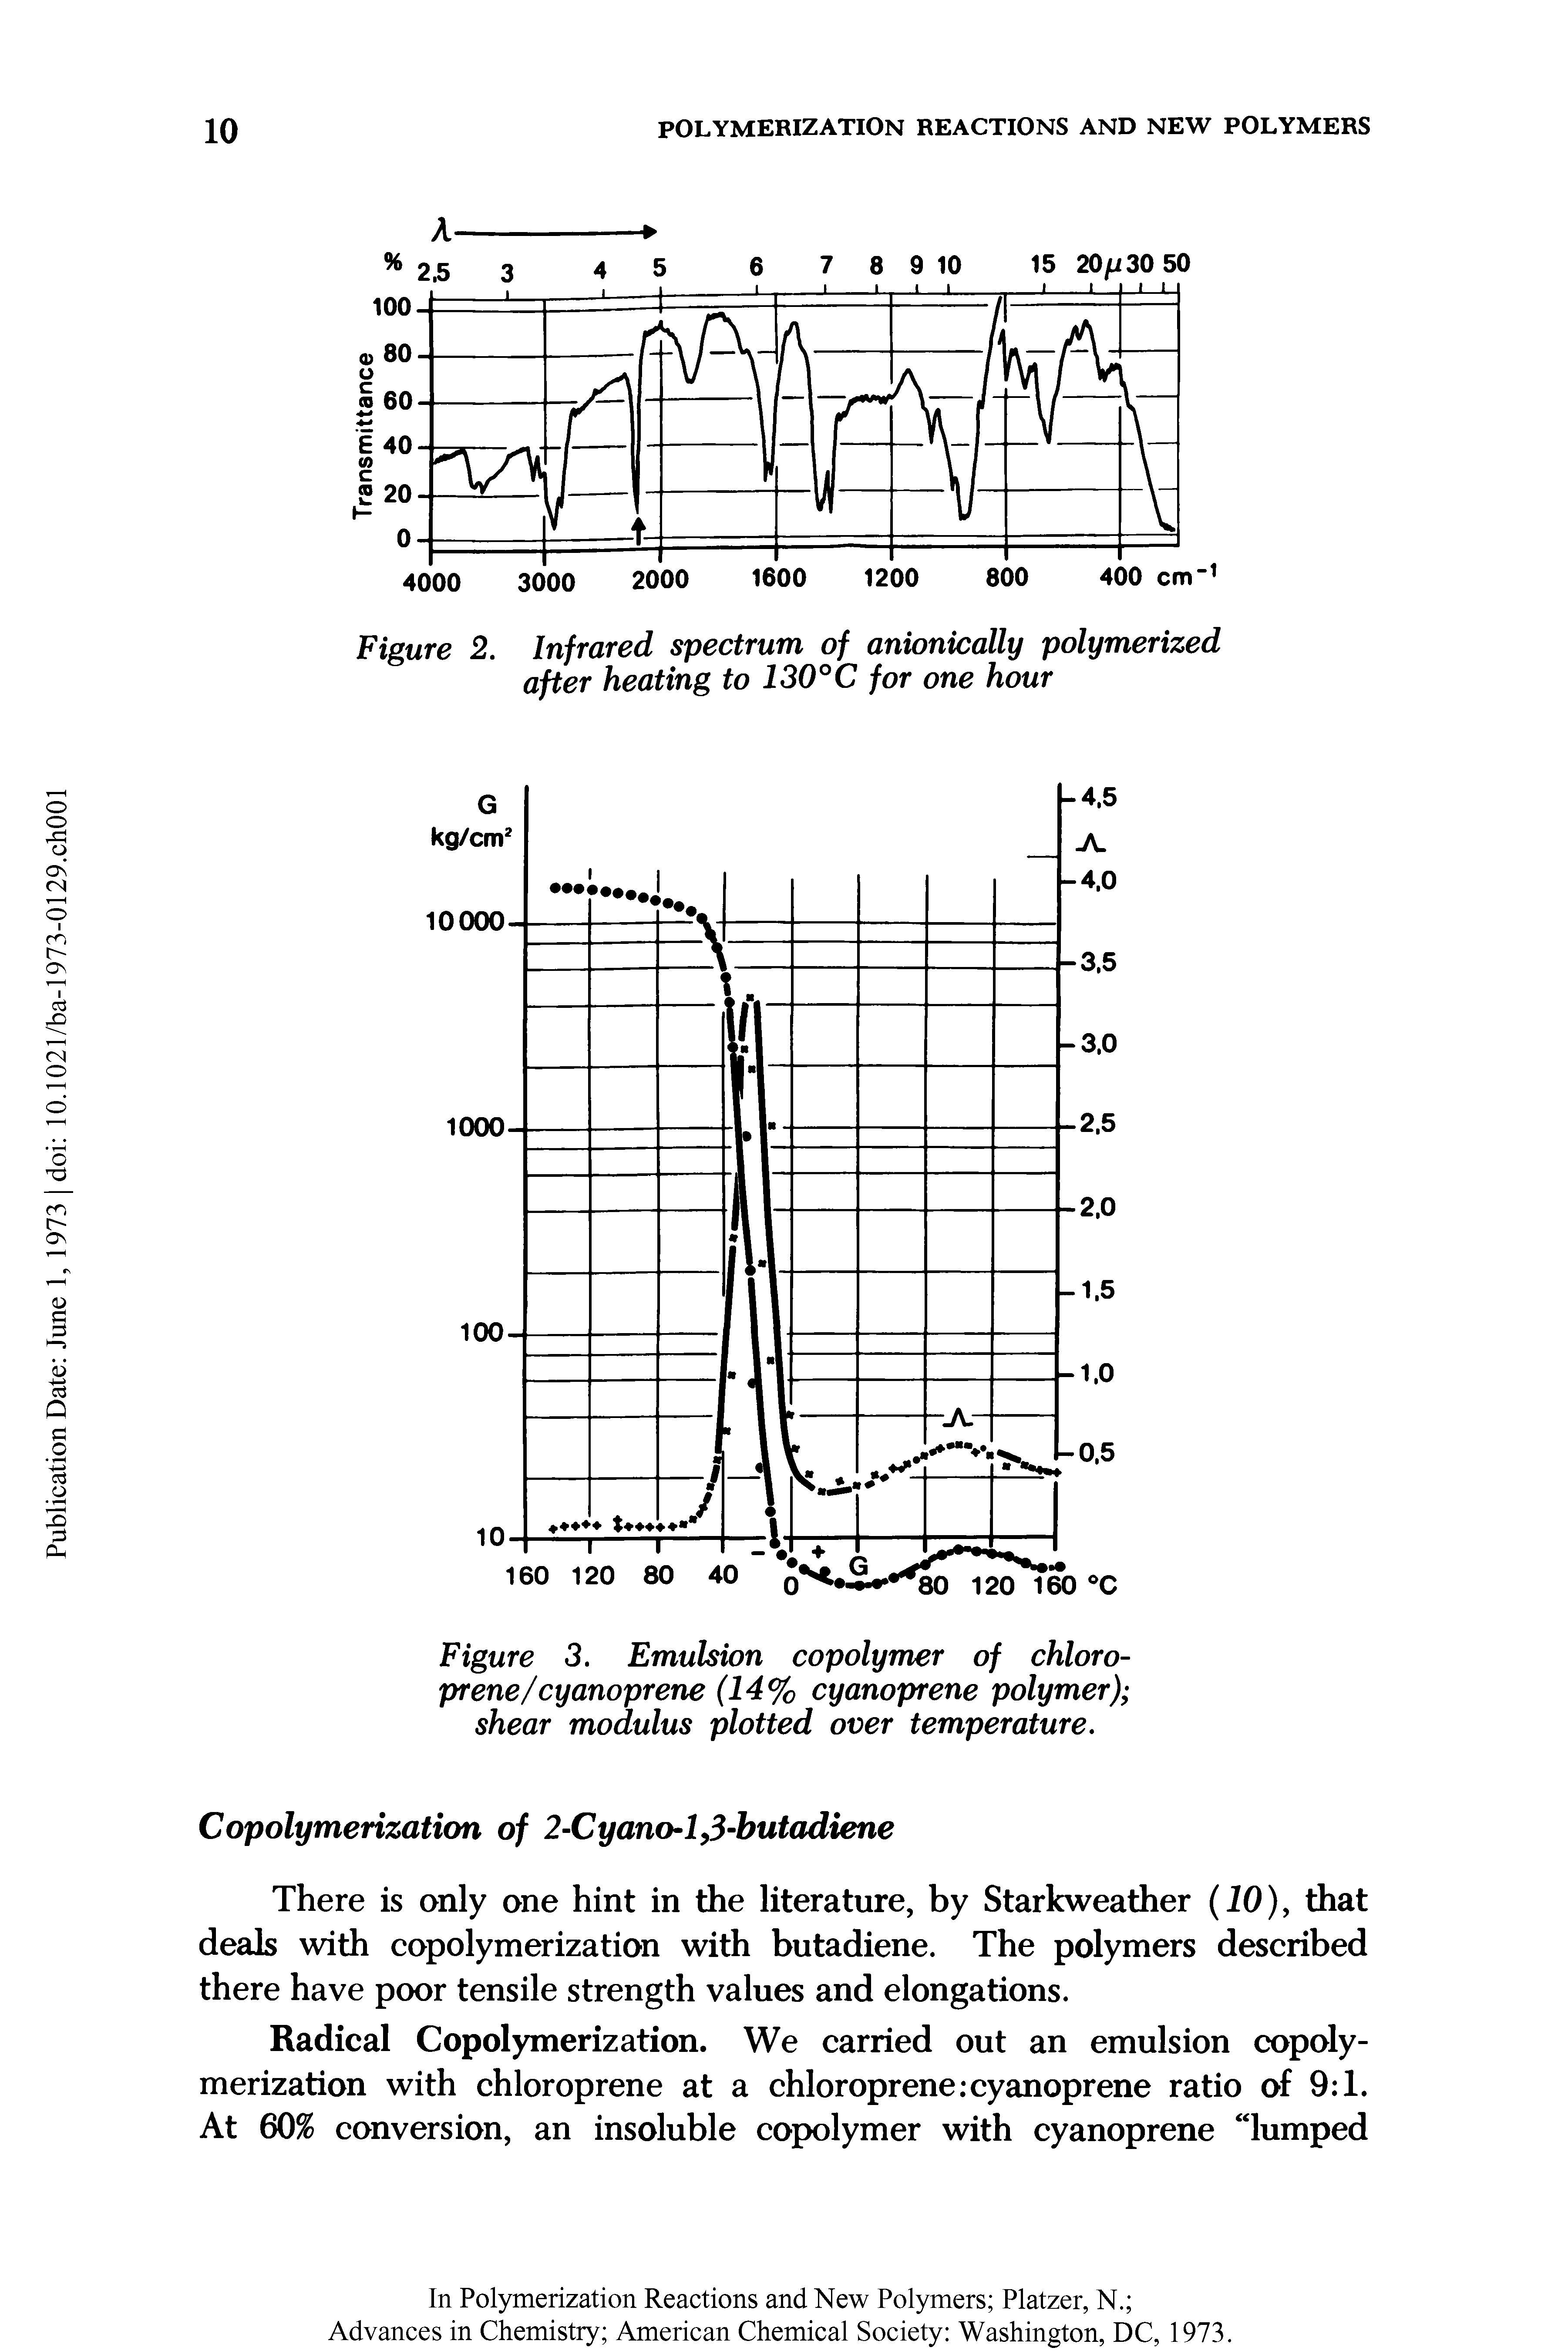 Figure 3. Emulsion copolymer of chloro-prene/cyanoprene (14% cyanoprene polymer) shear modulus plotted over temperature.